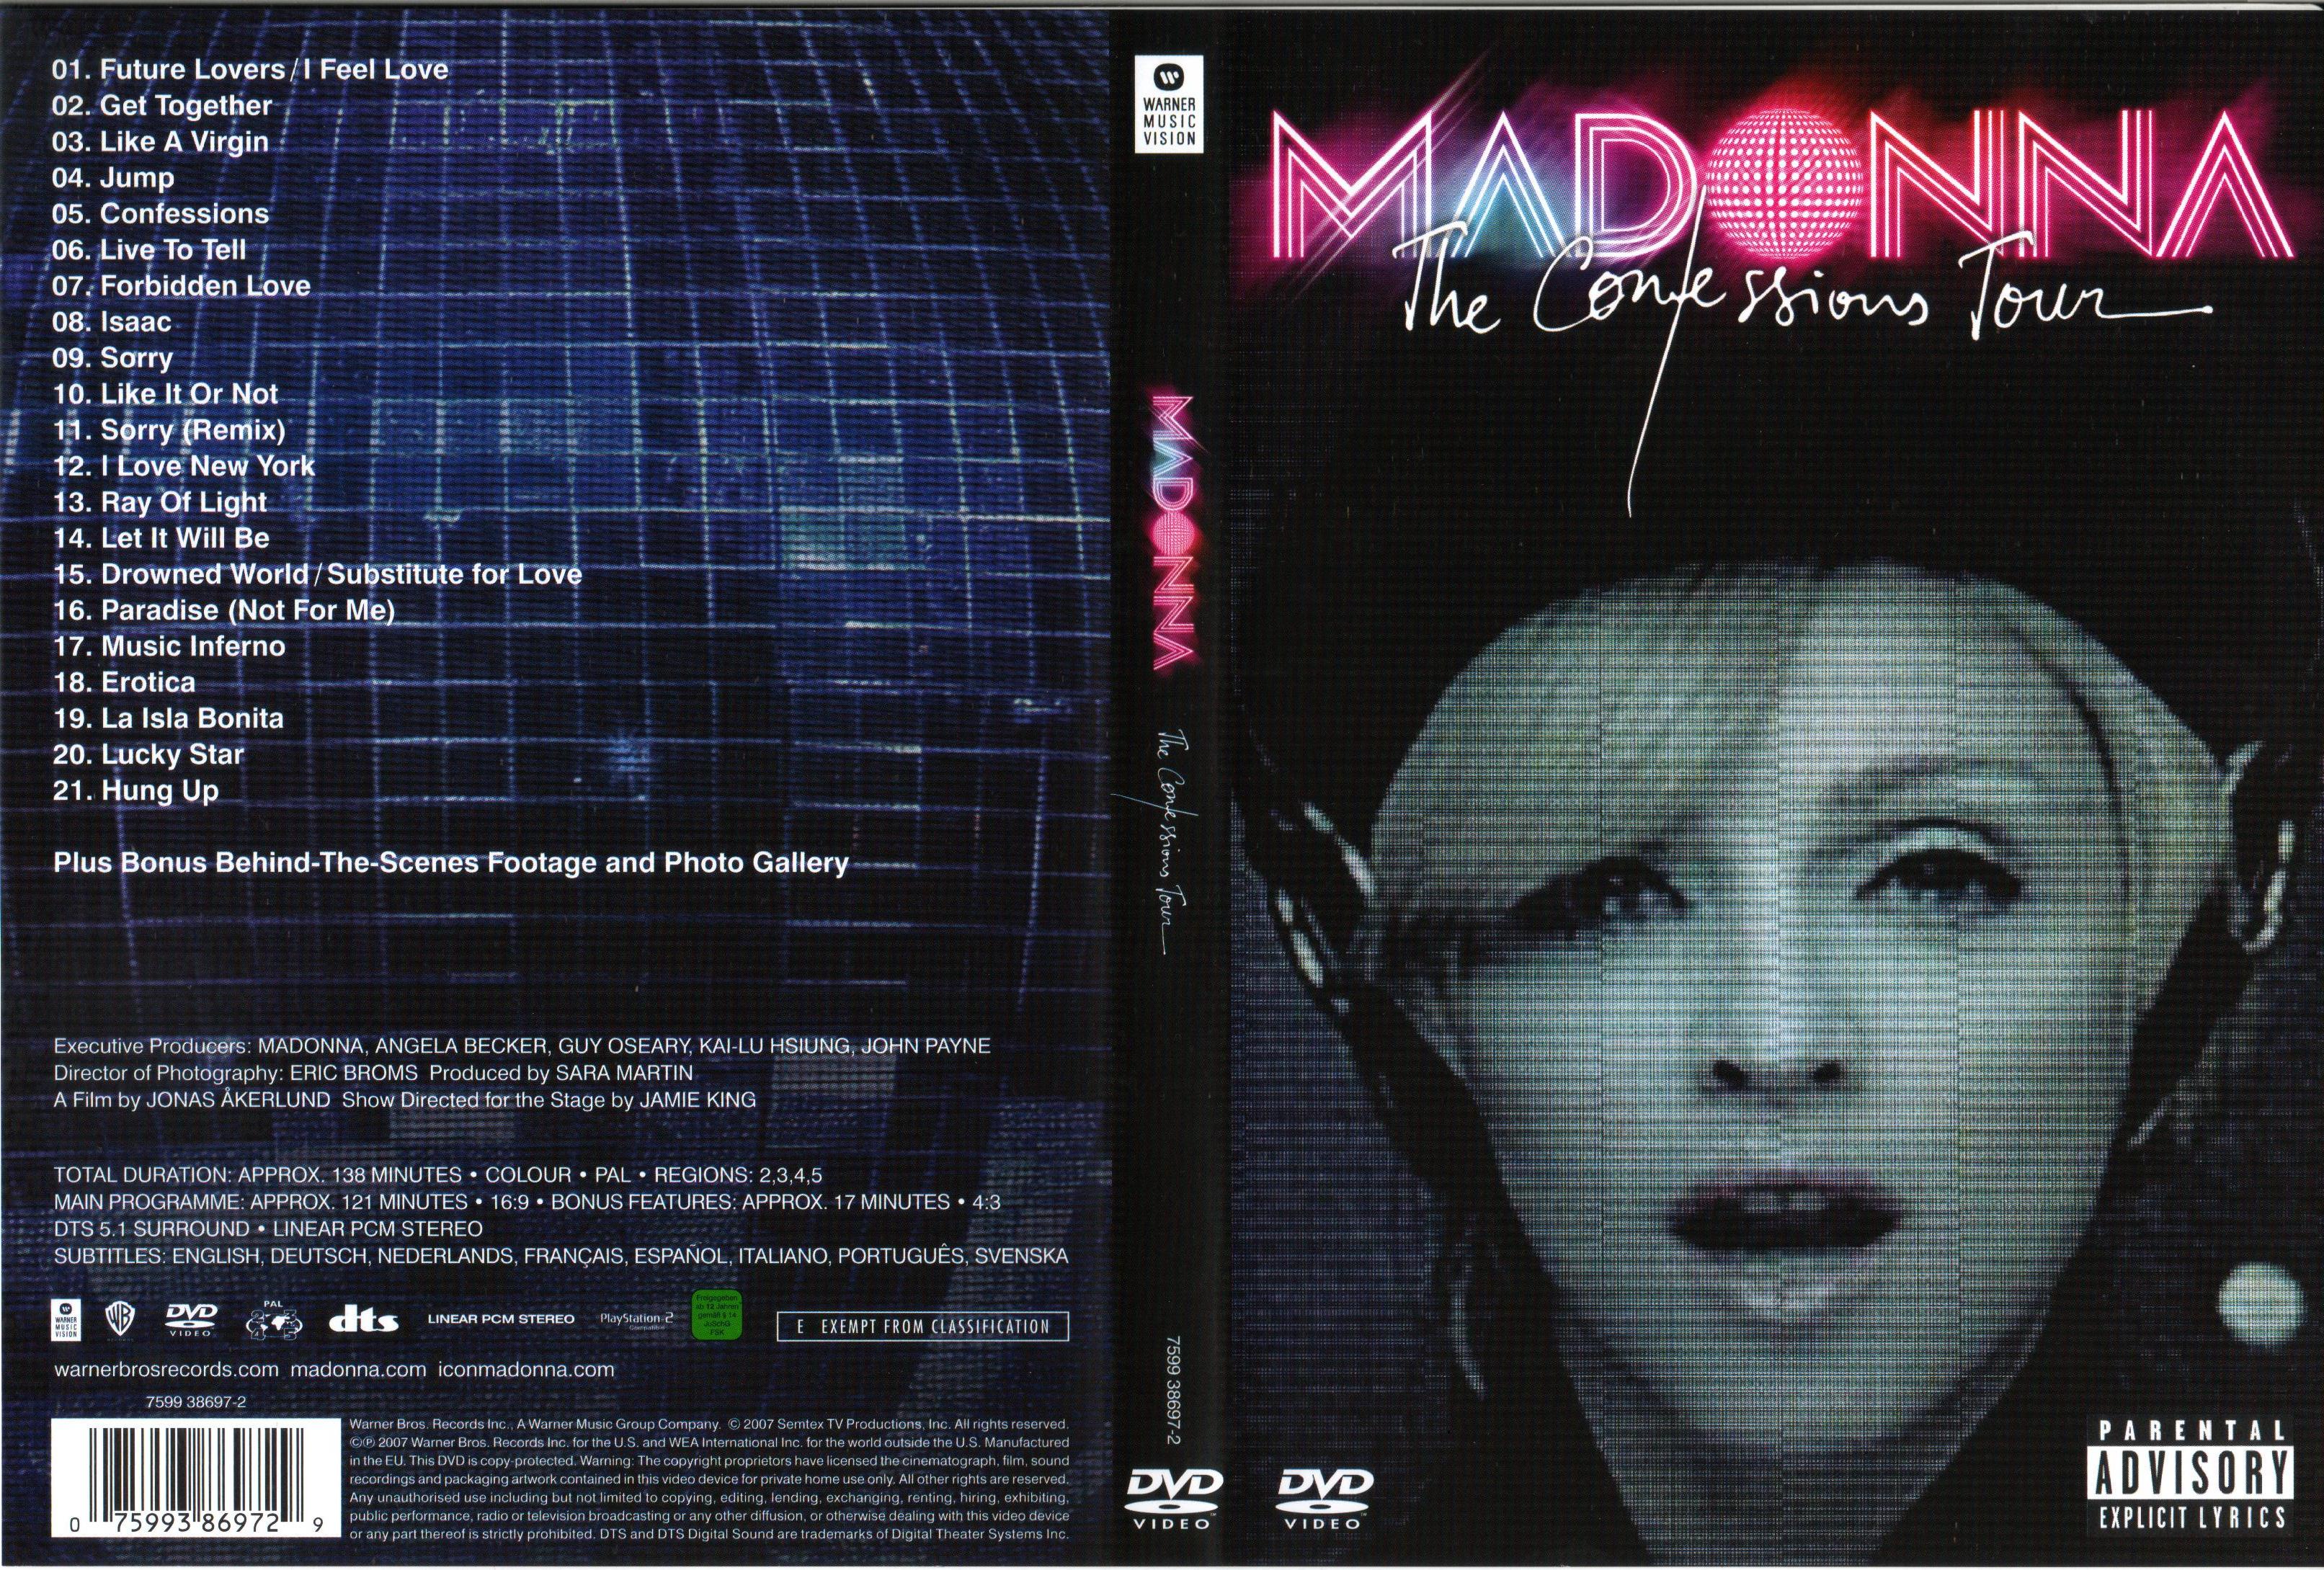 Jaquette DVD Madonna The confessions tour